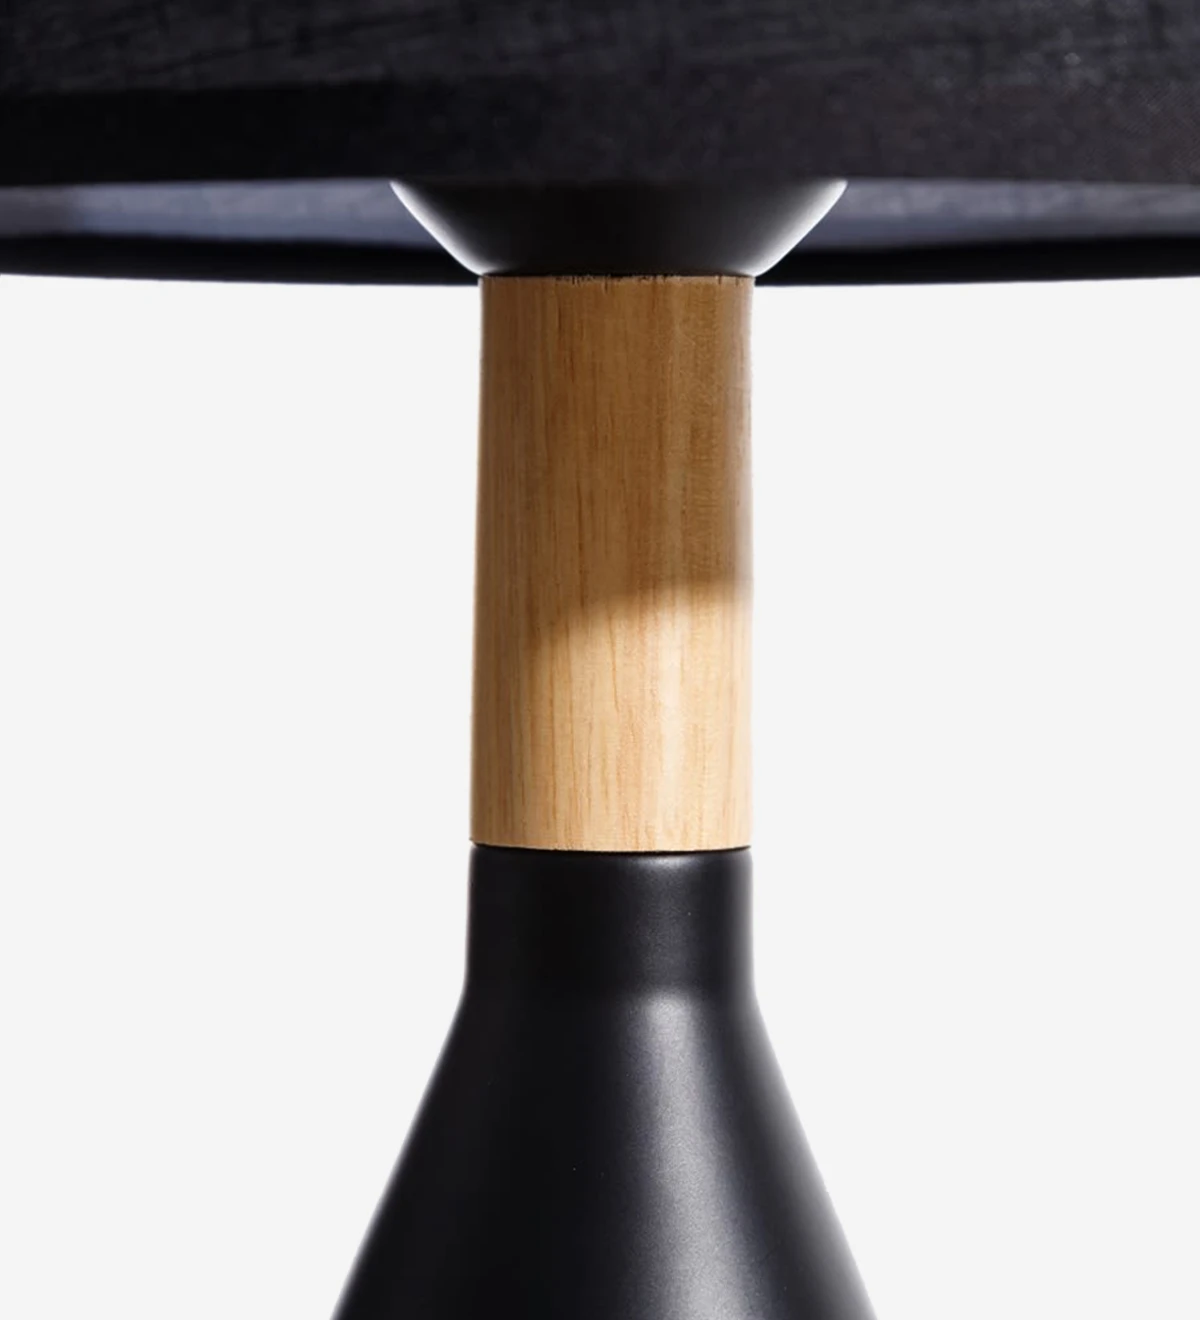  Lampe de table avec base en métal peint en noir et bois avec abat-jour en tissu noir.